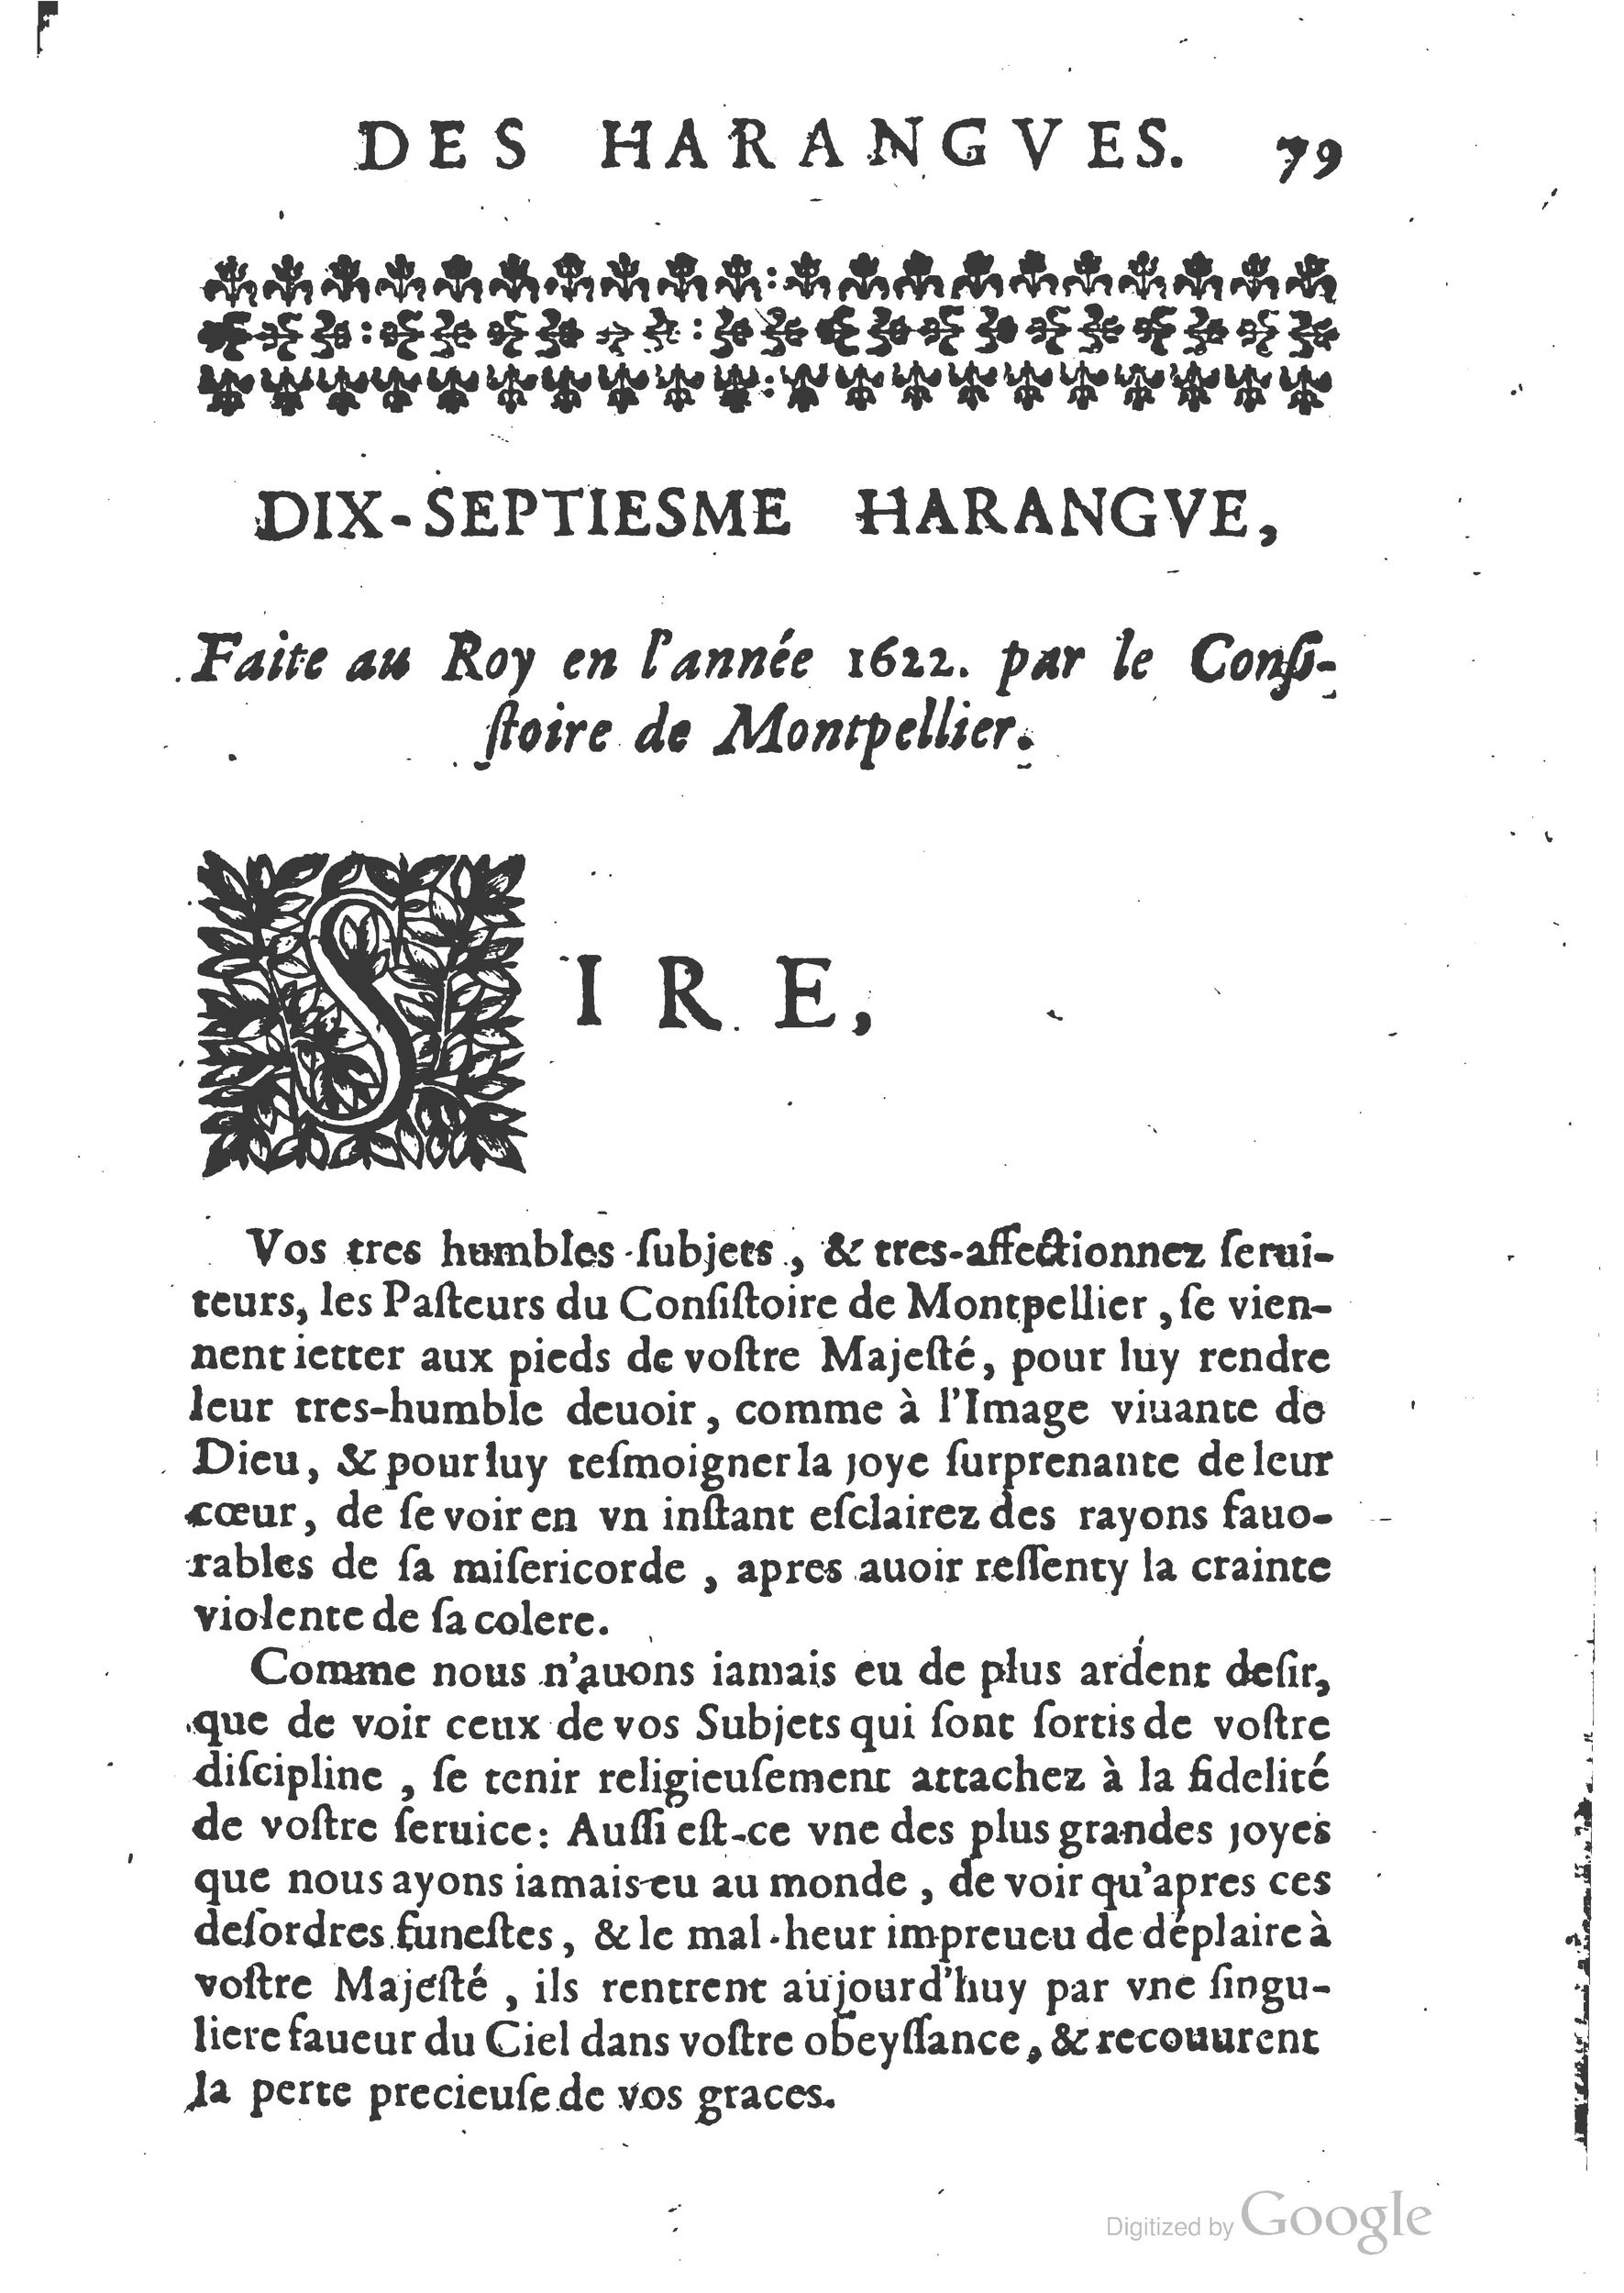 1654 Trésor des harangues, remontrances et oraisons funèbres Robin_BM Lyon_Page_098.jpg